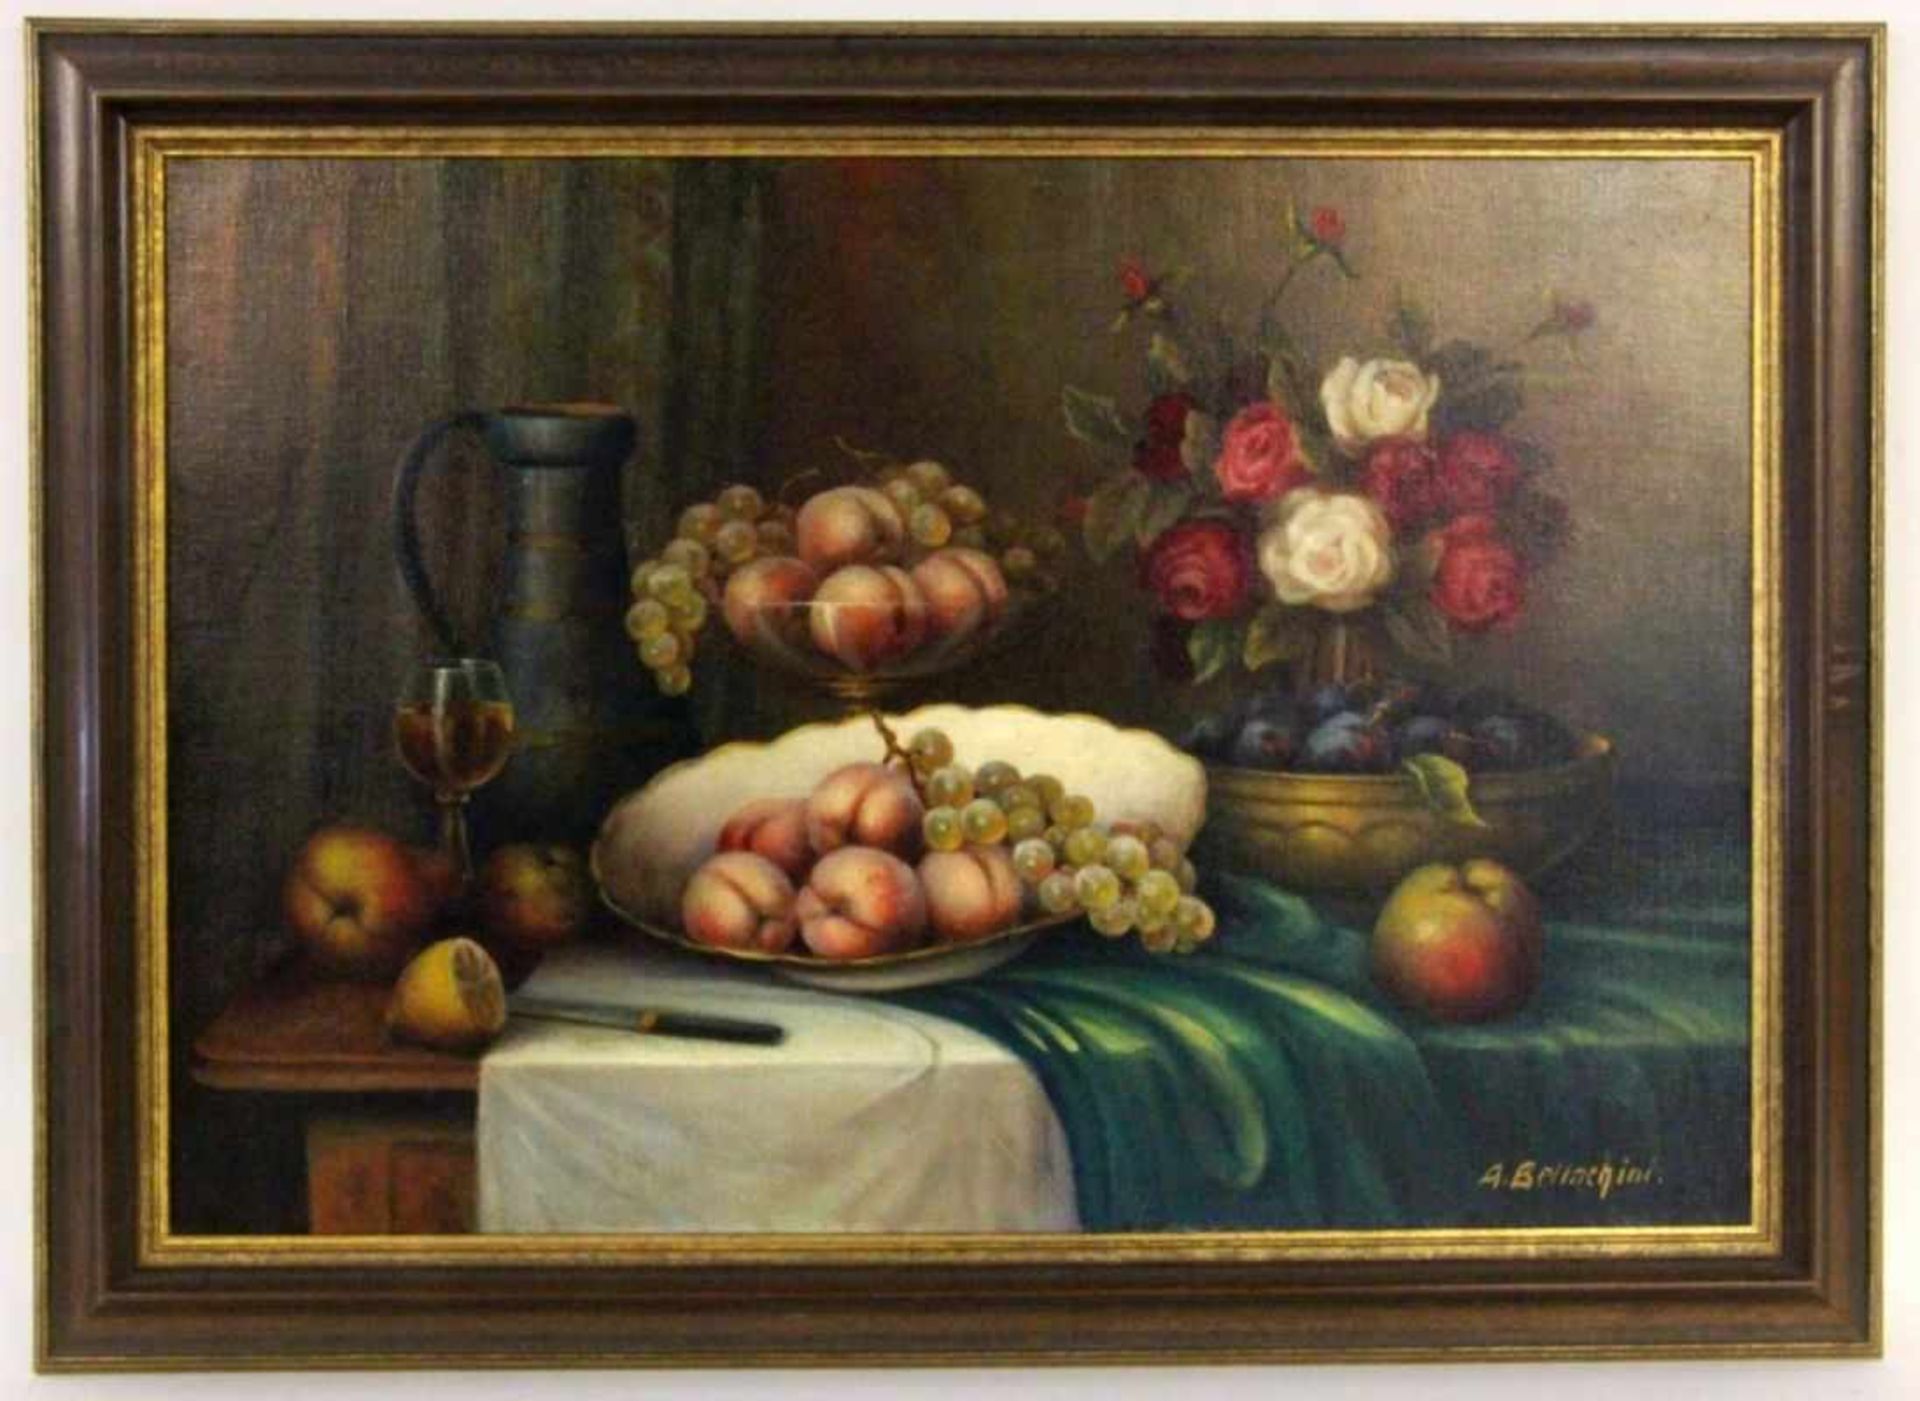 BELLACHINI, A.Böblinger Maler um 1930 Stillleben mit Blumen und Früchten. Öl/Lwd., signiert.